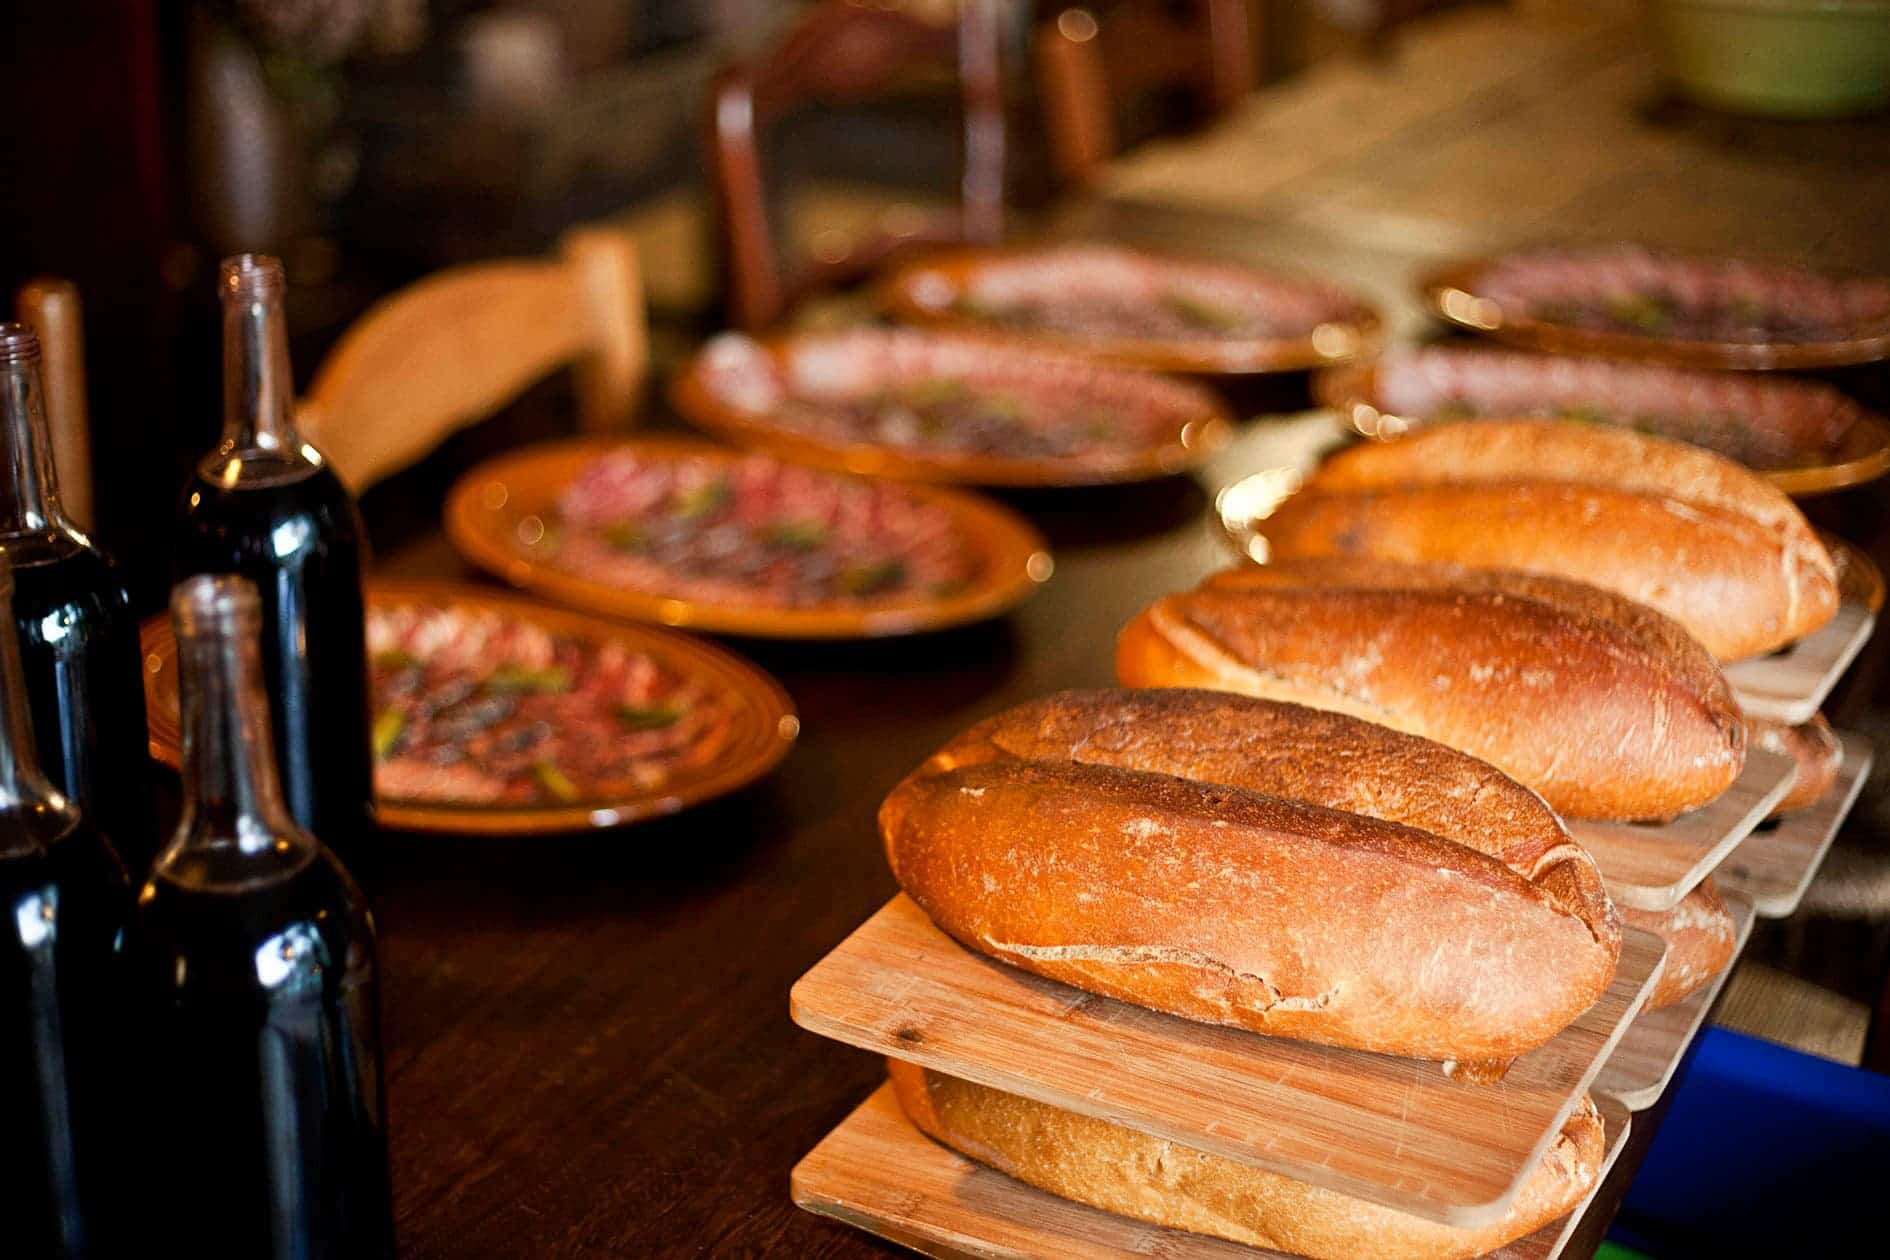 Gluten-free bread. Image via Wikipedia.